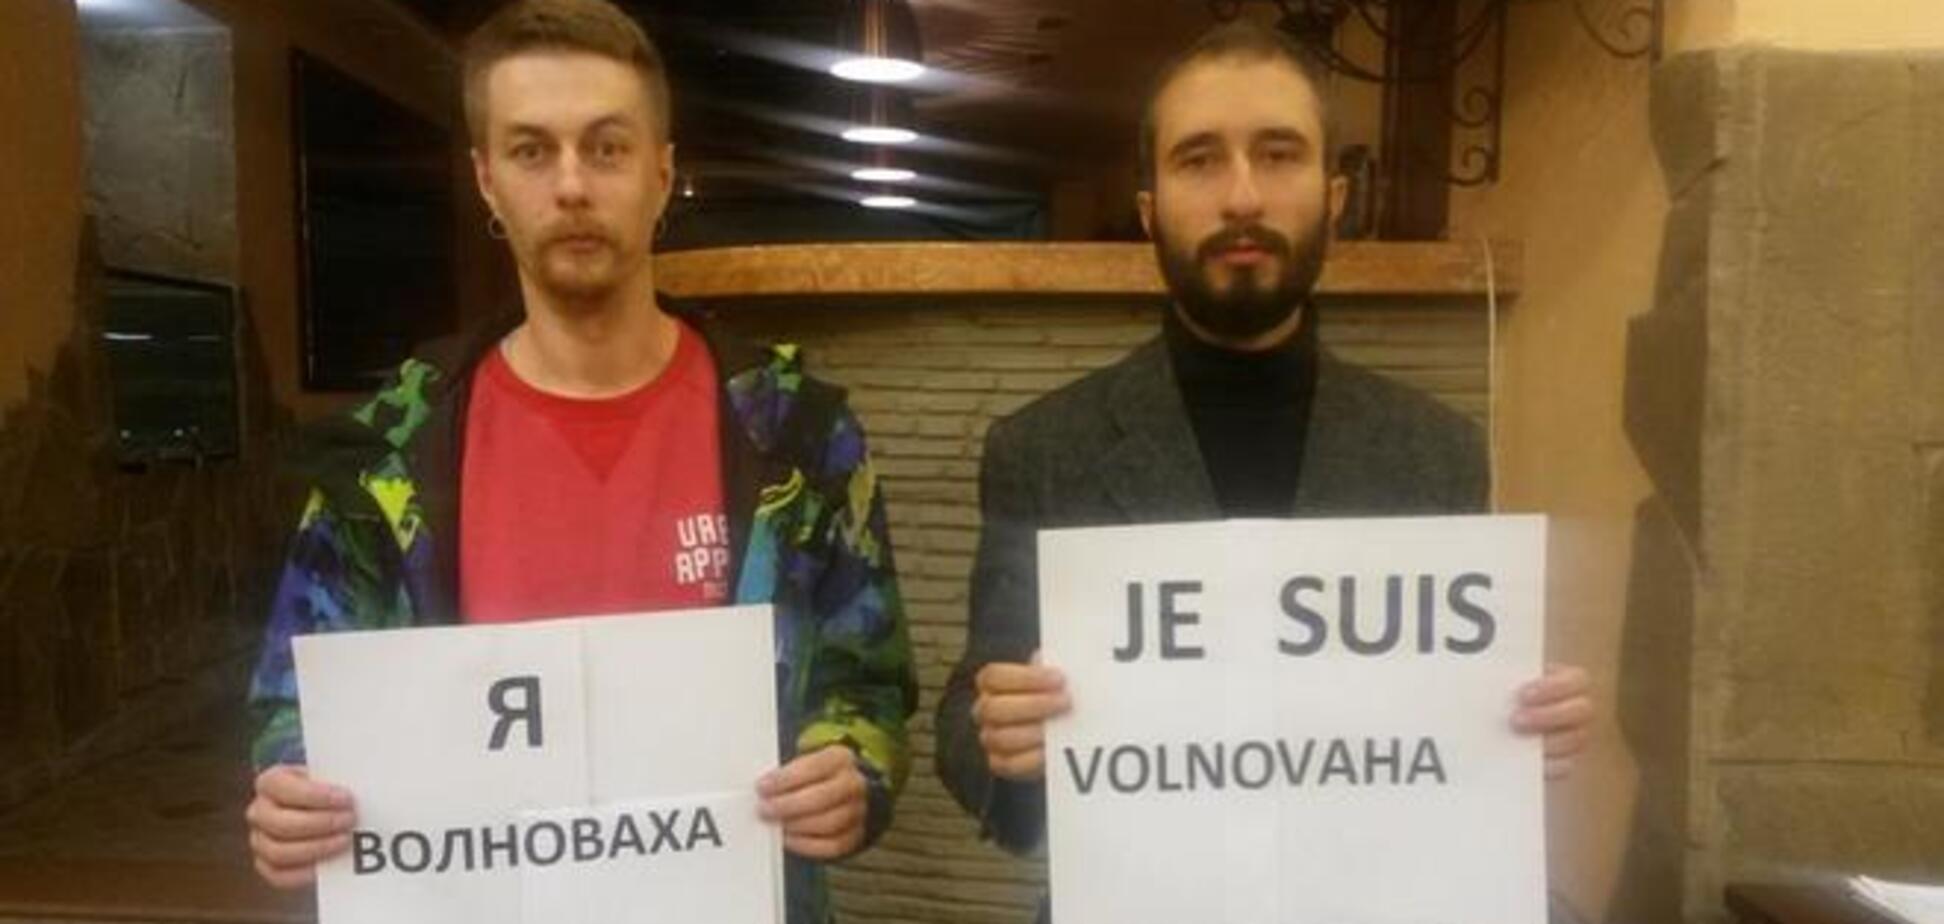 'Я - Волноваха': акція проти тероризму на Донбасі підірвала Мережу